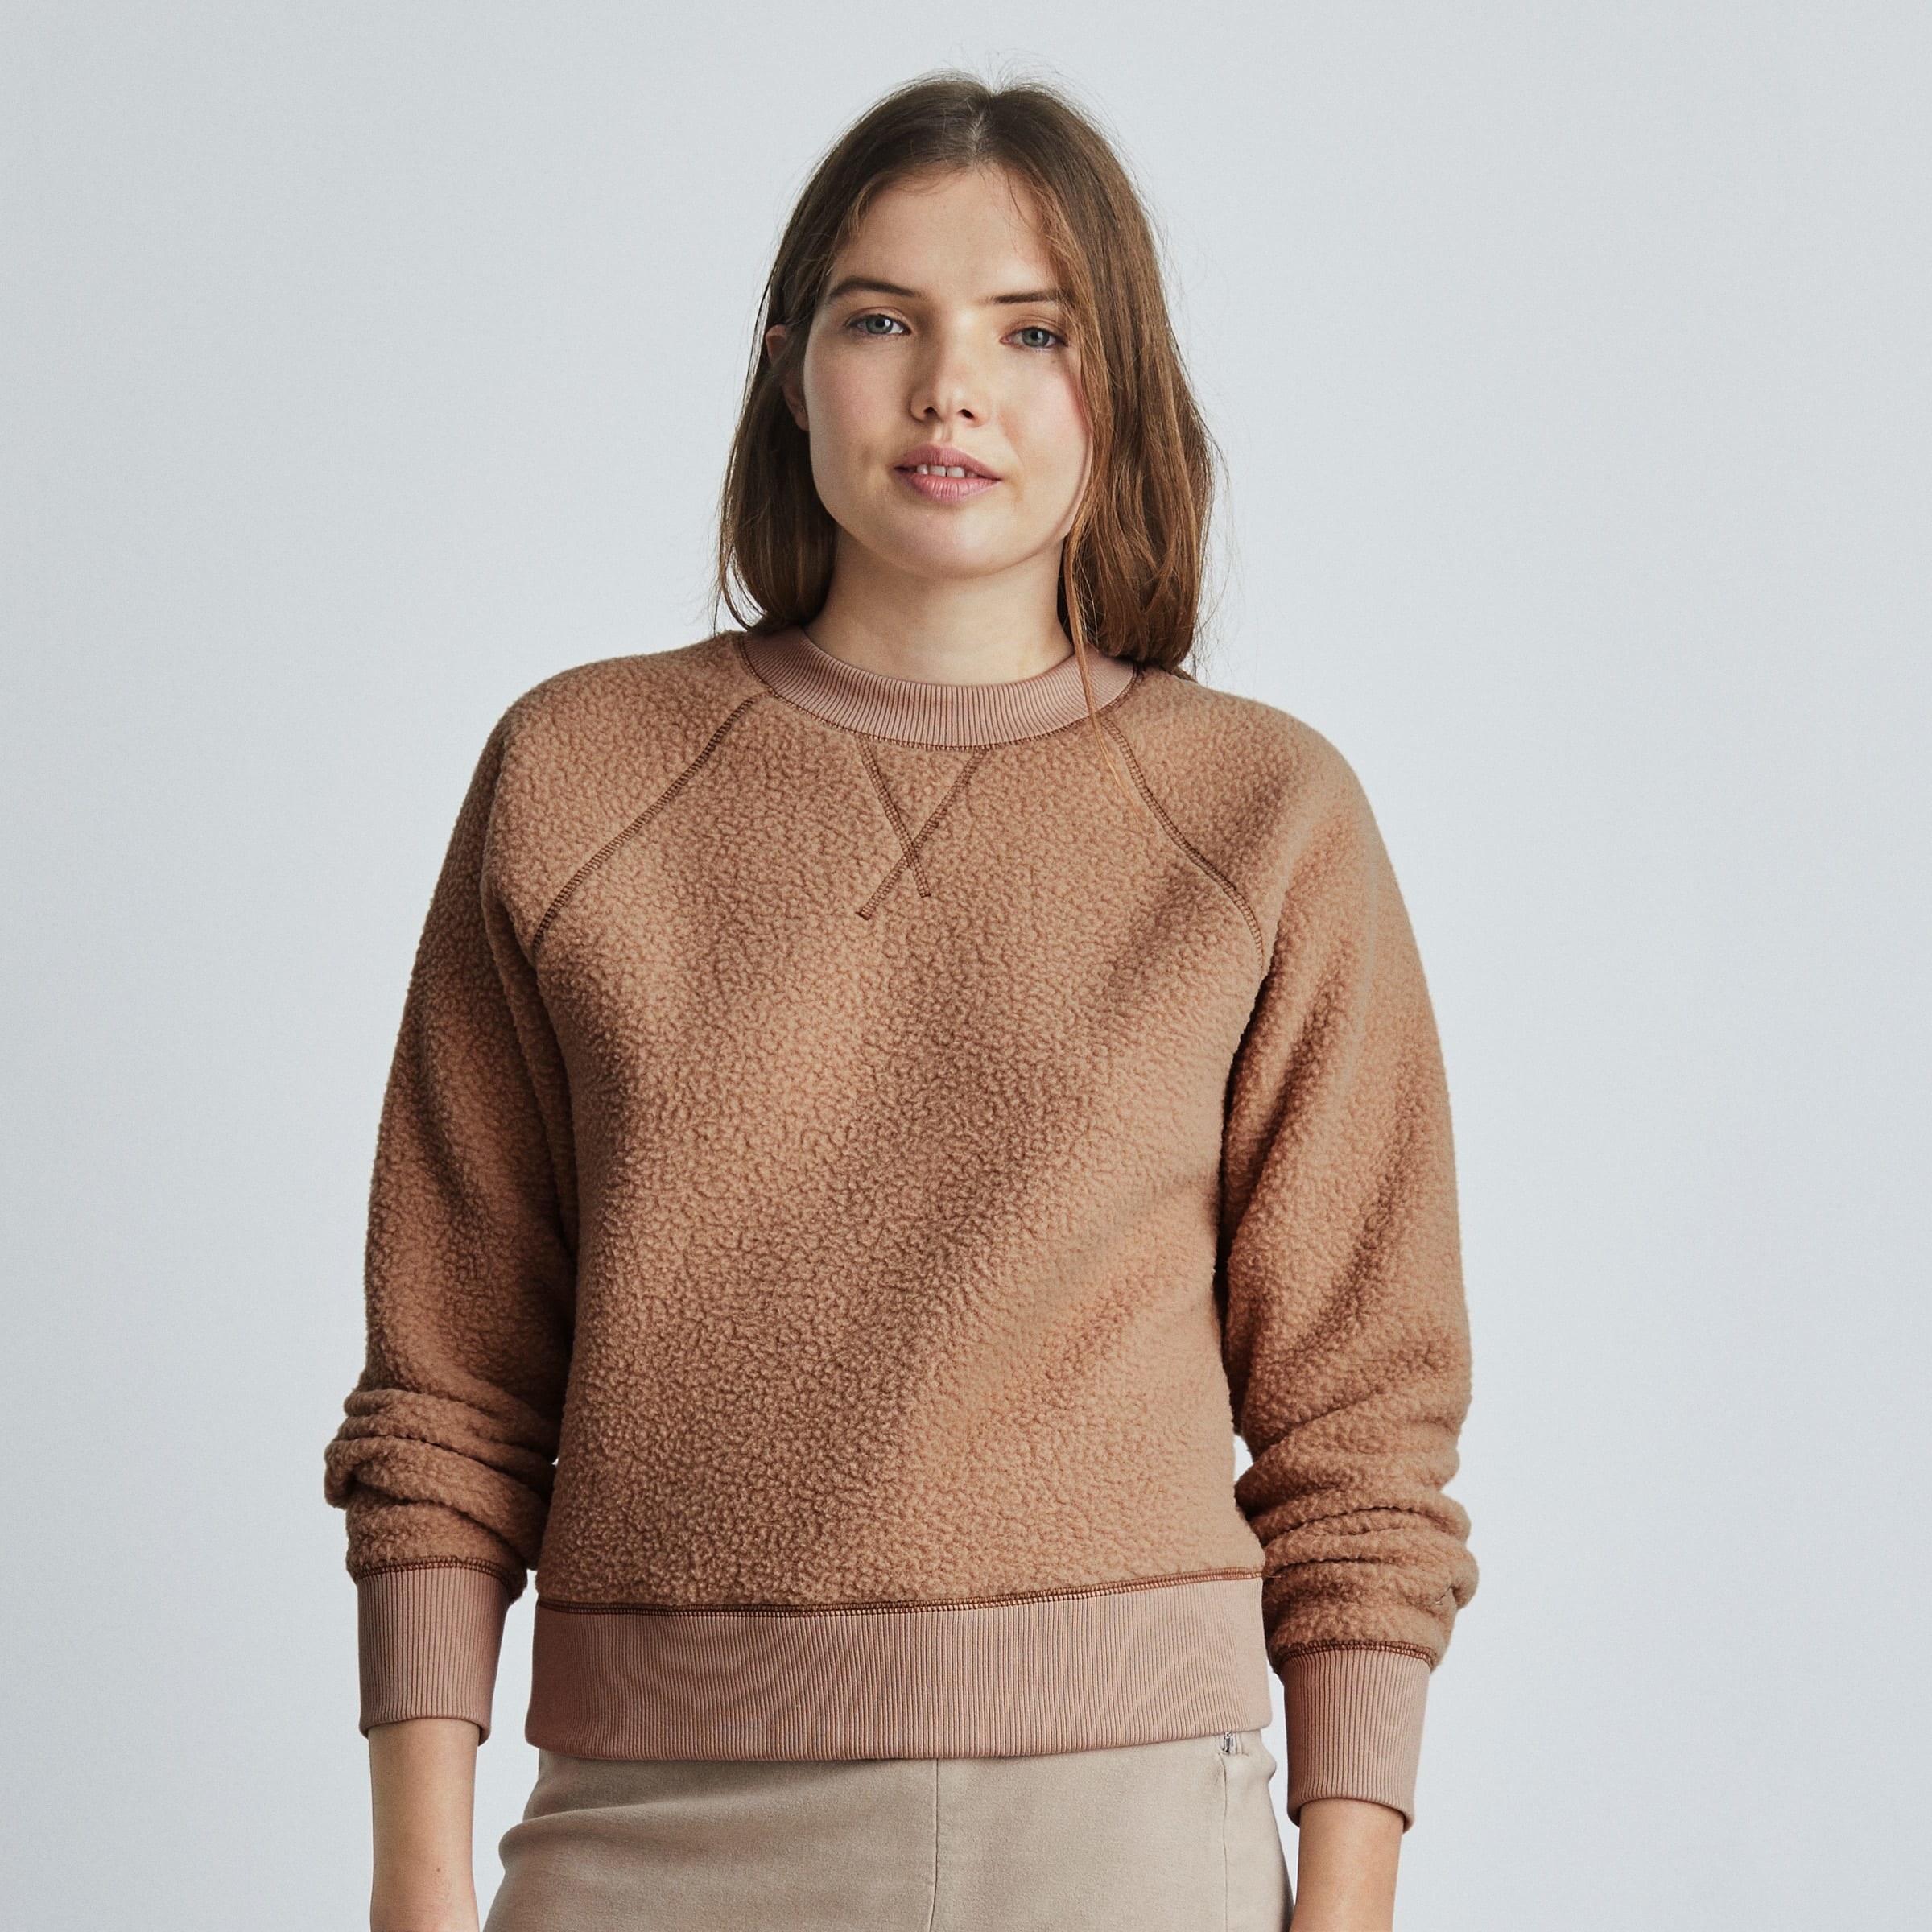 a model wearing the fleece pullover sweatshirt in light brown